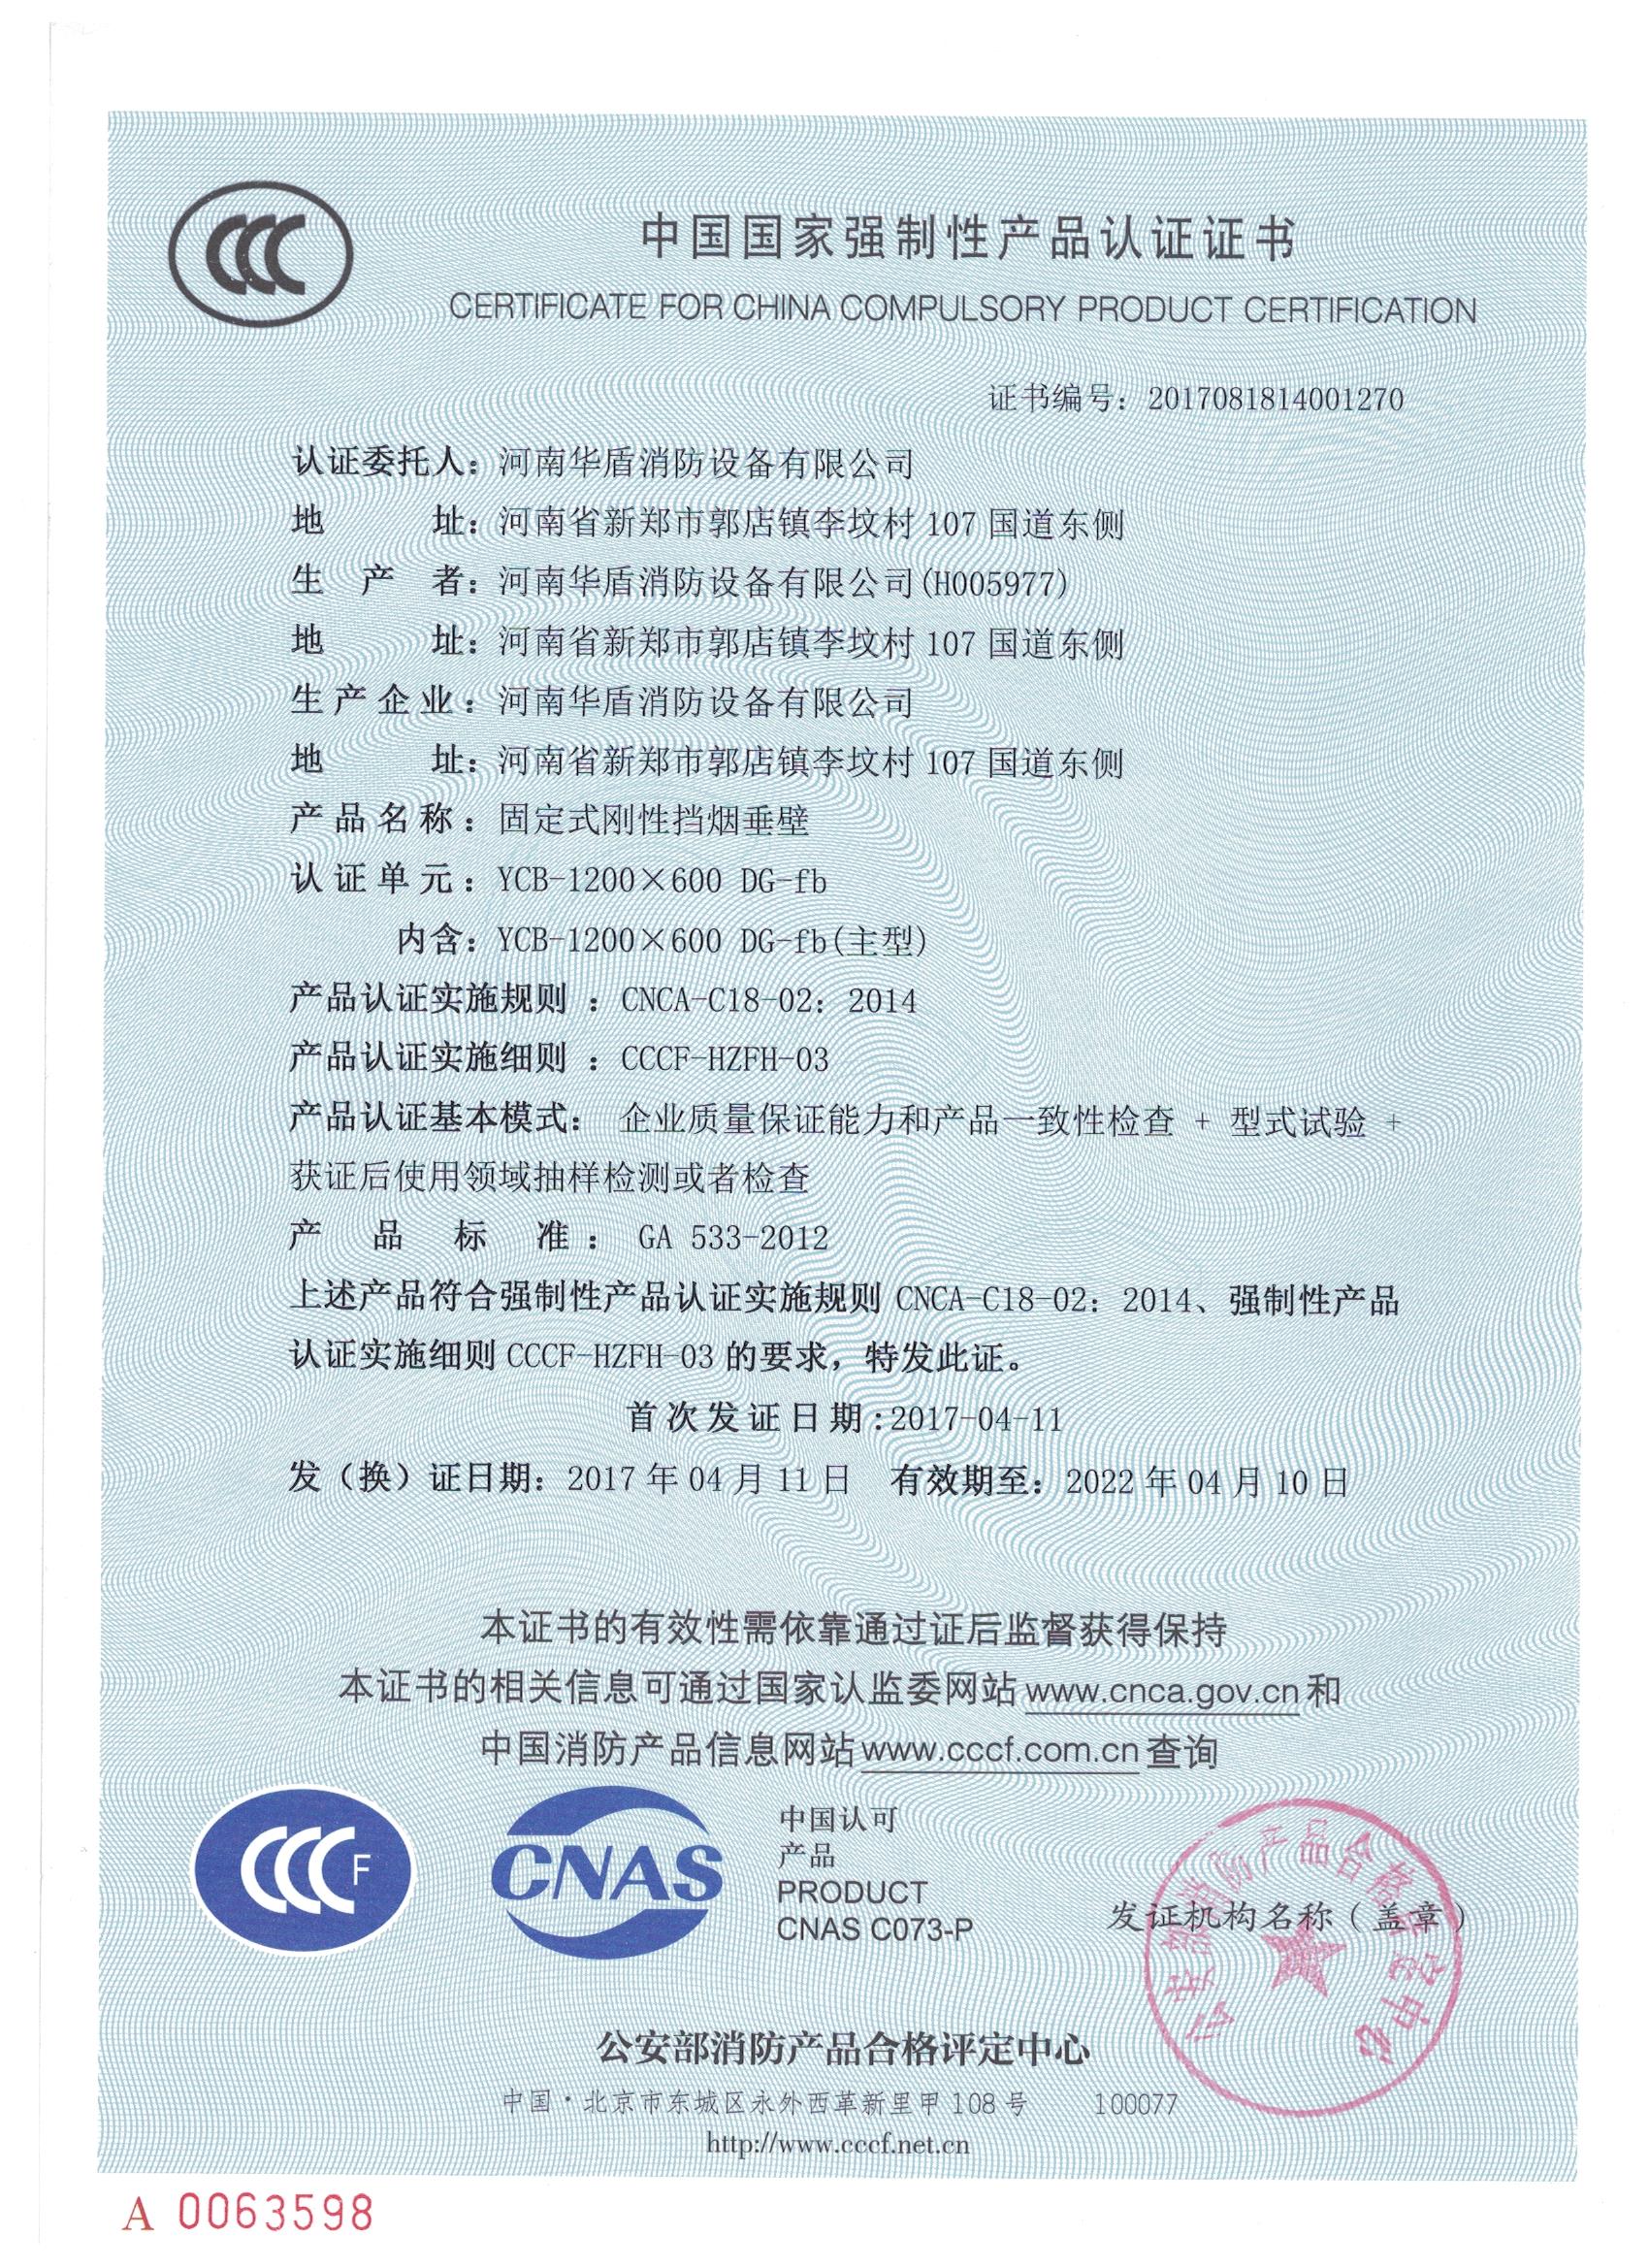 陕西YCB-1000X600 DG-fd-3C证书/检验报告